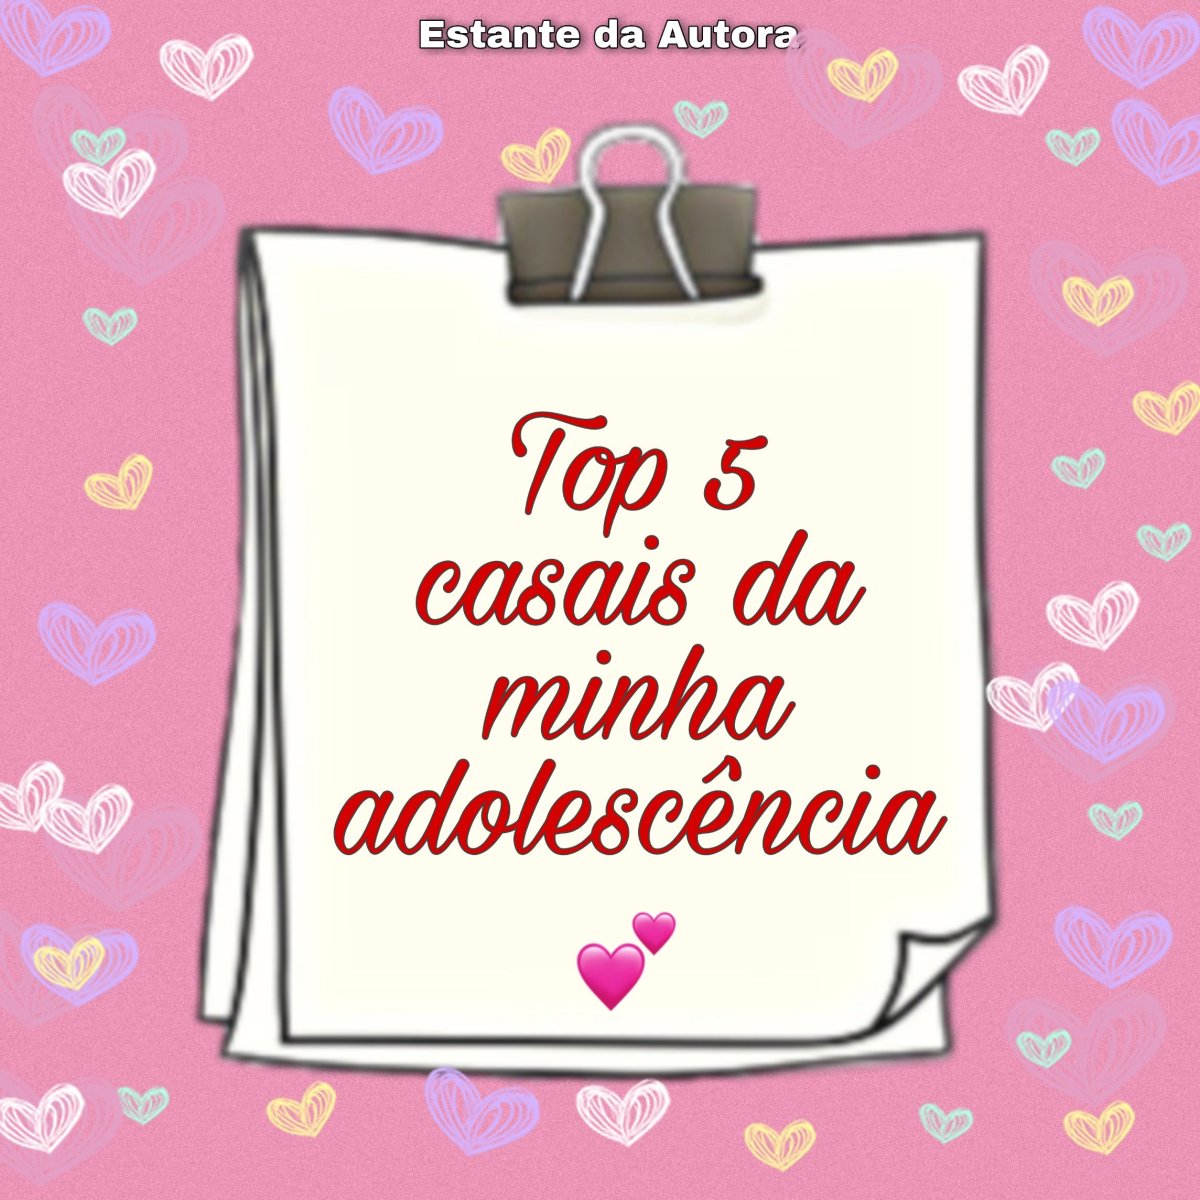 TOP 5 CASAIS DA MINHA ADOLESCÊNCIA